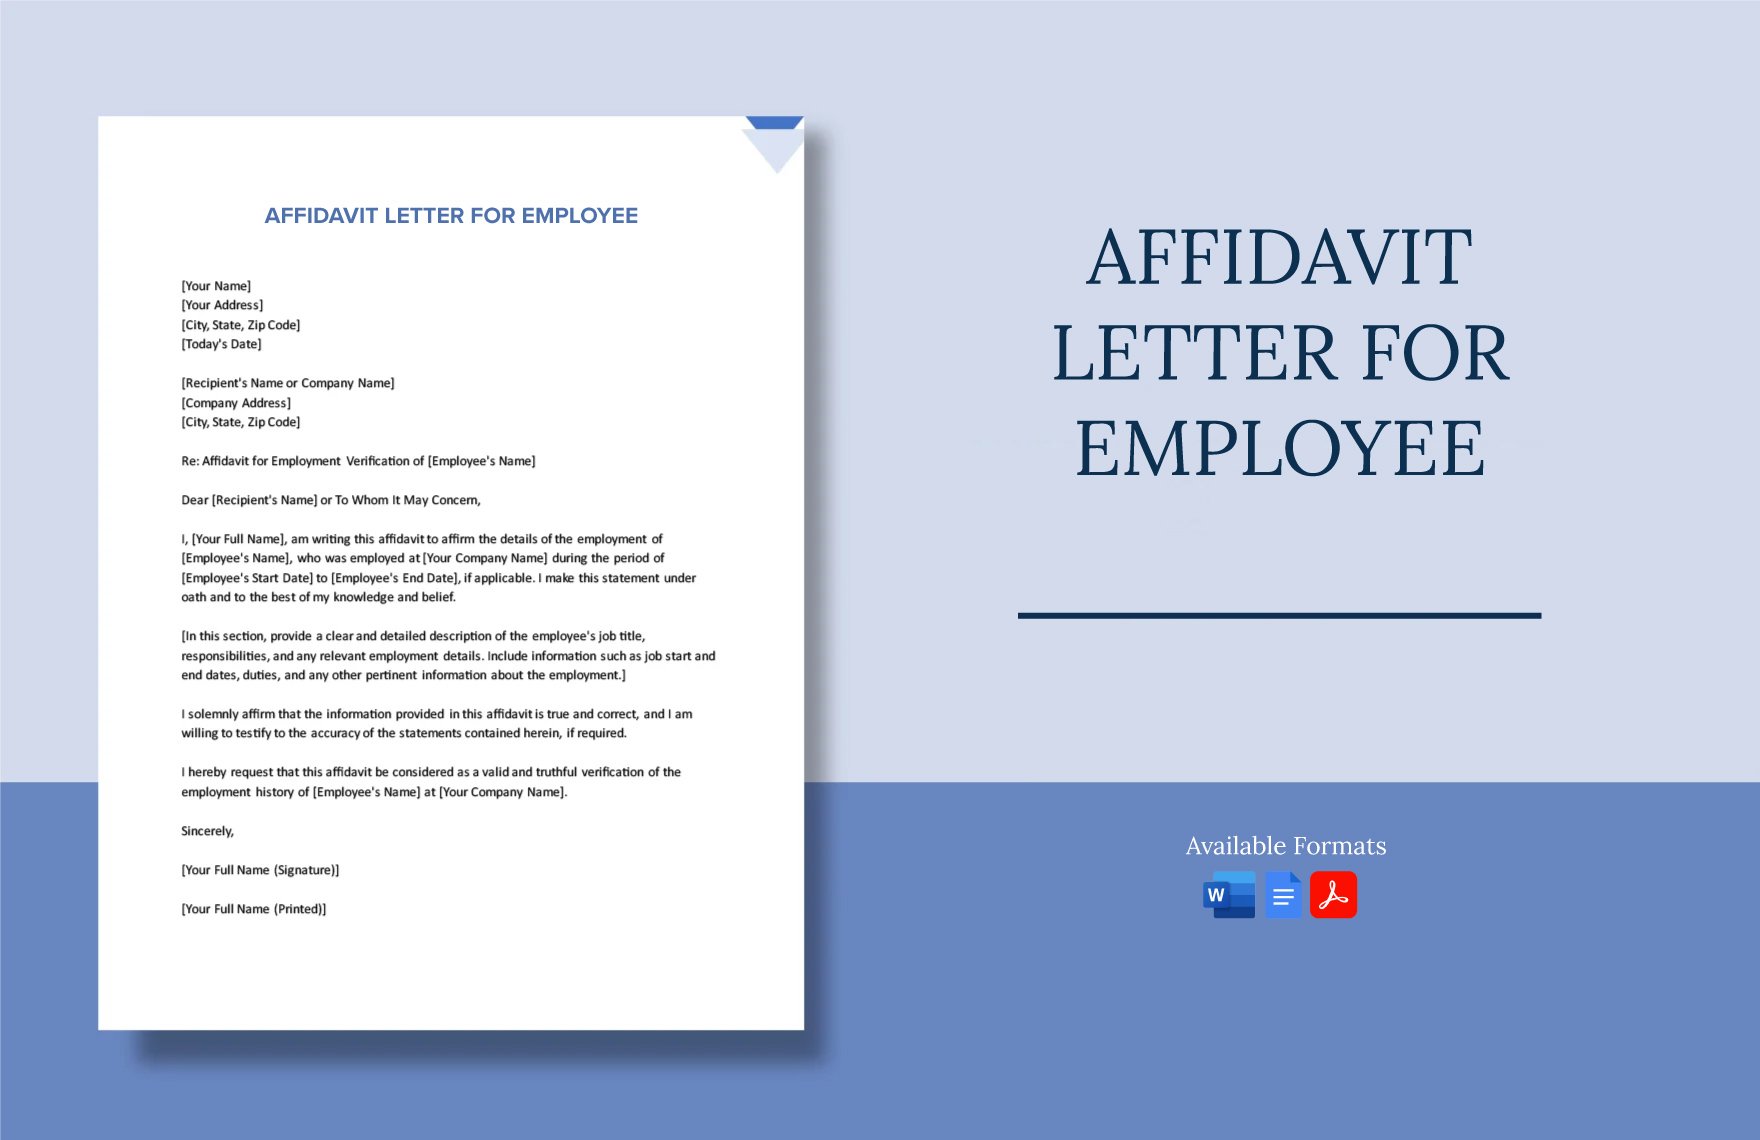 Affidavit Letter For Employee in Word, Google Docs, PDF